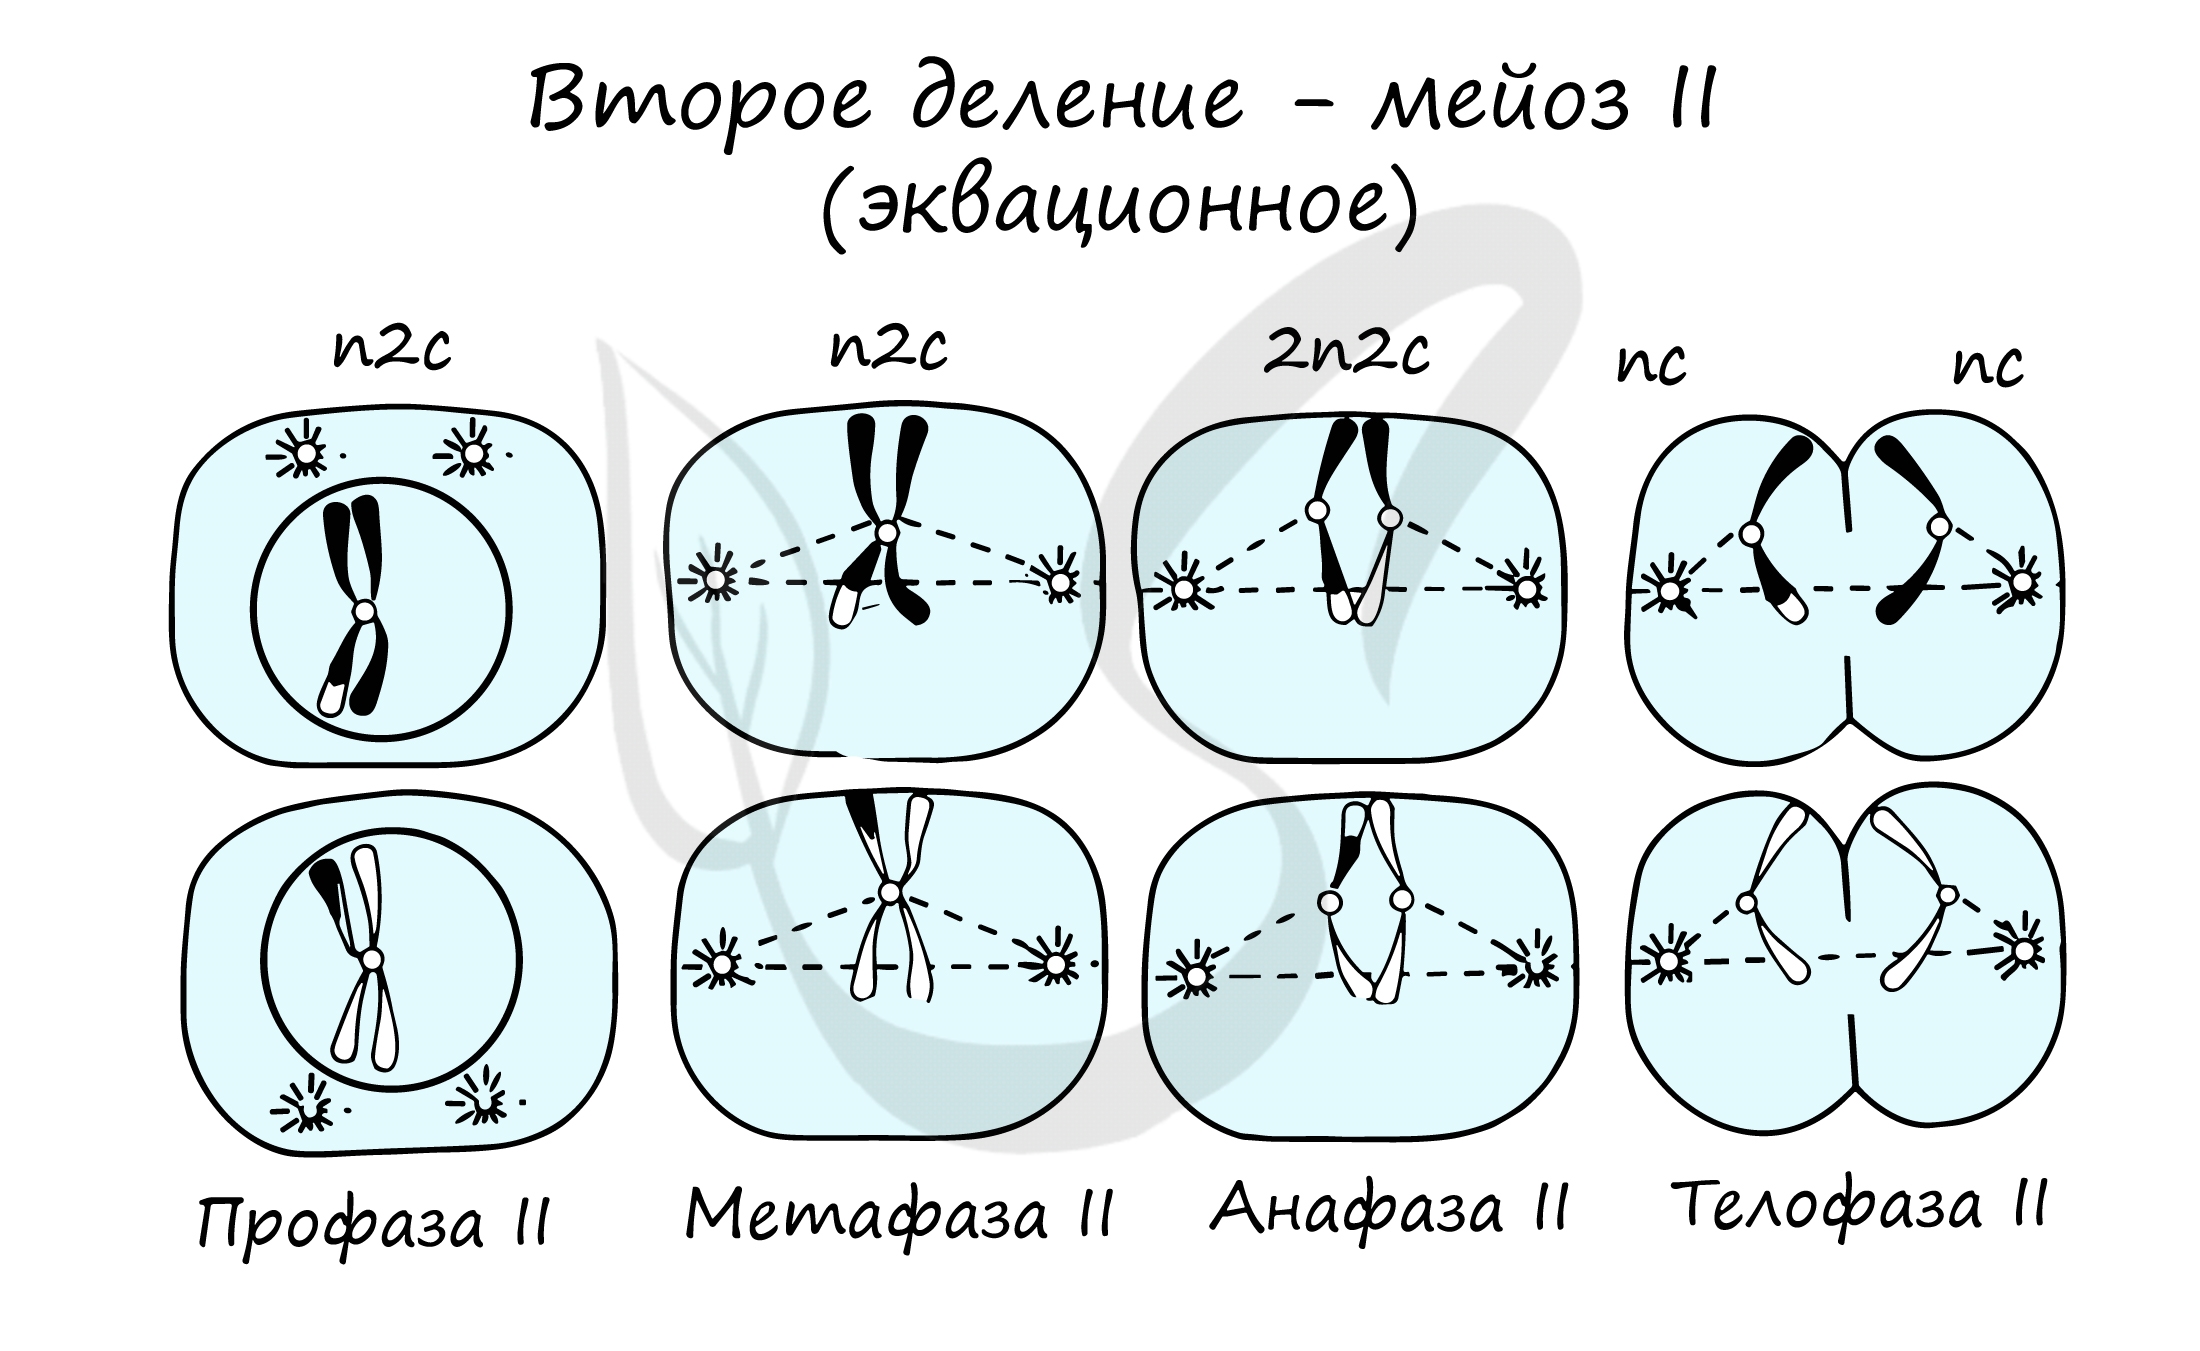 Схема мейоза 2n 2. Деление клетки мейоз анафаза 2. Анафаза 2 деления мейоза. Фазы мейоза второе деление. Митоз мейоз nc